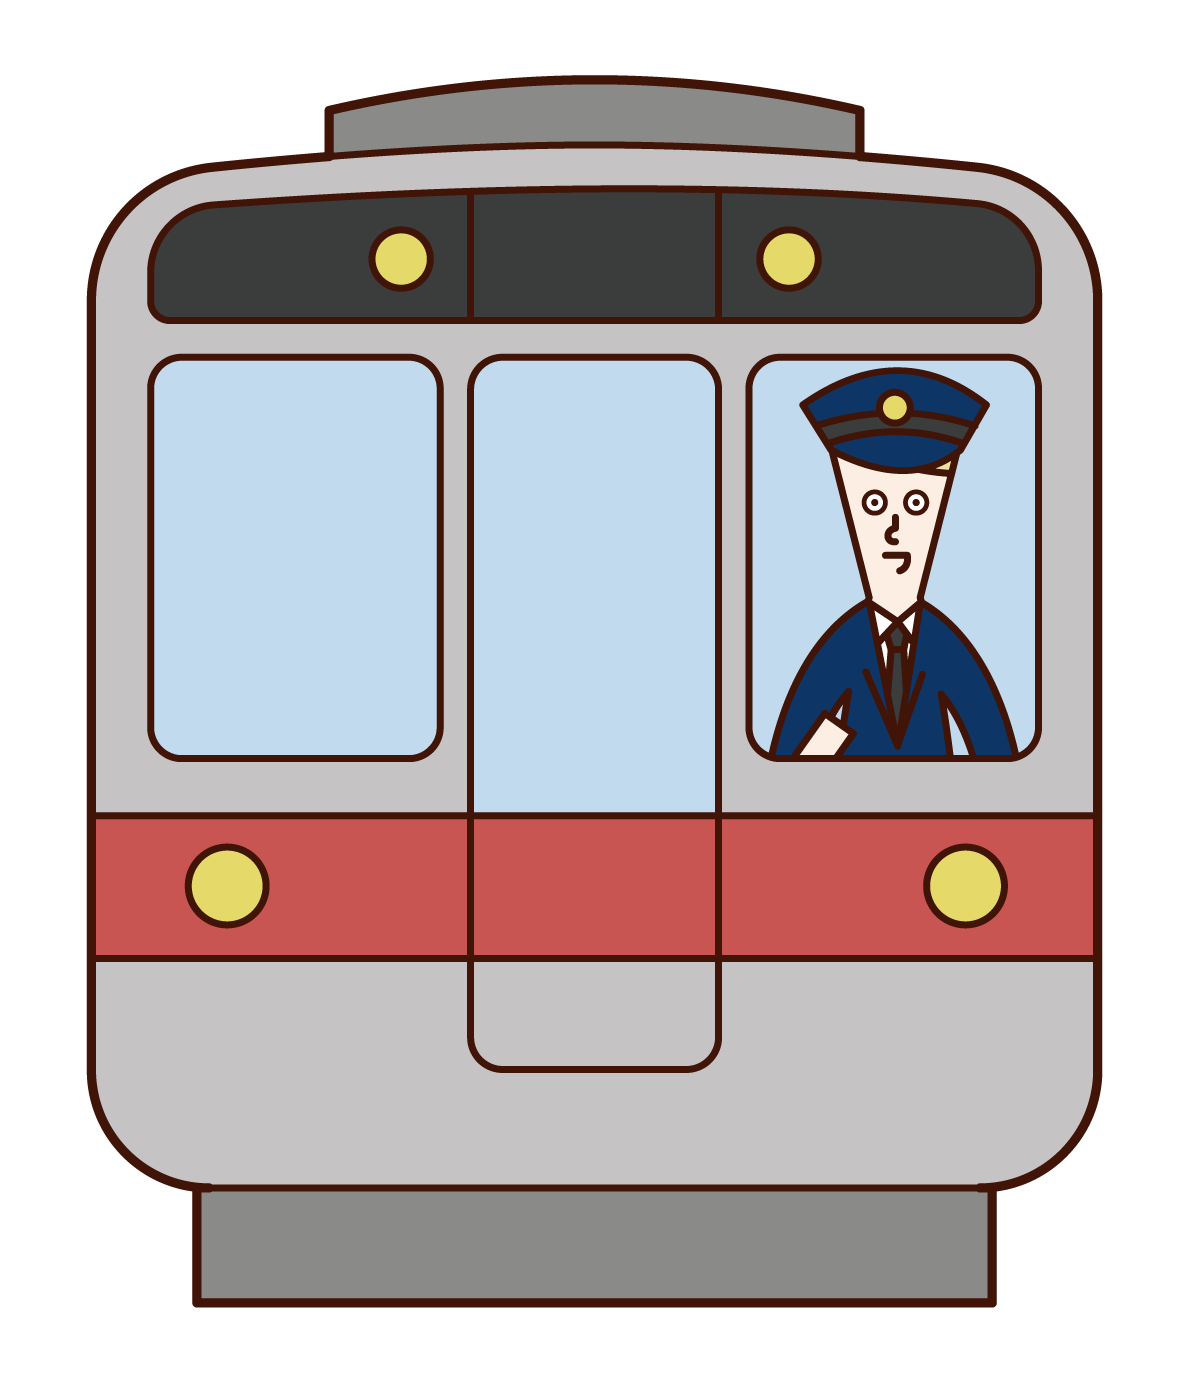 電車の運転士 男性 のイラスト フリーイラスト素材 Kukukeke ククケケ